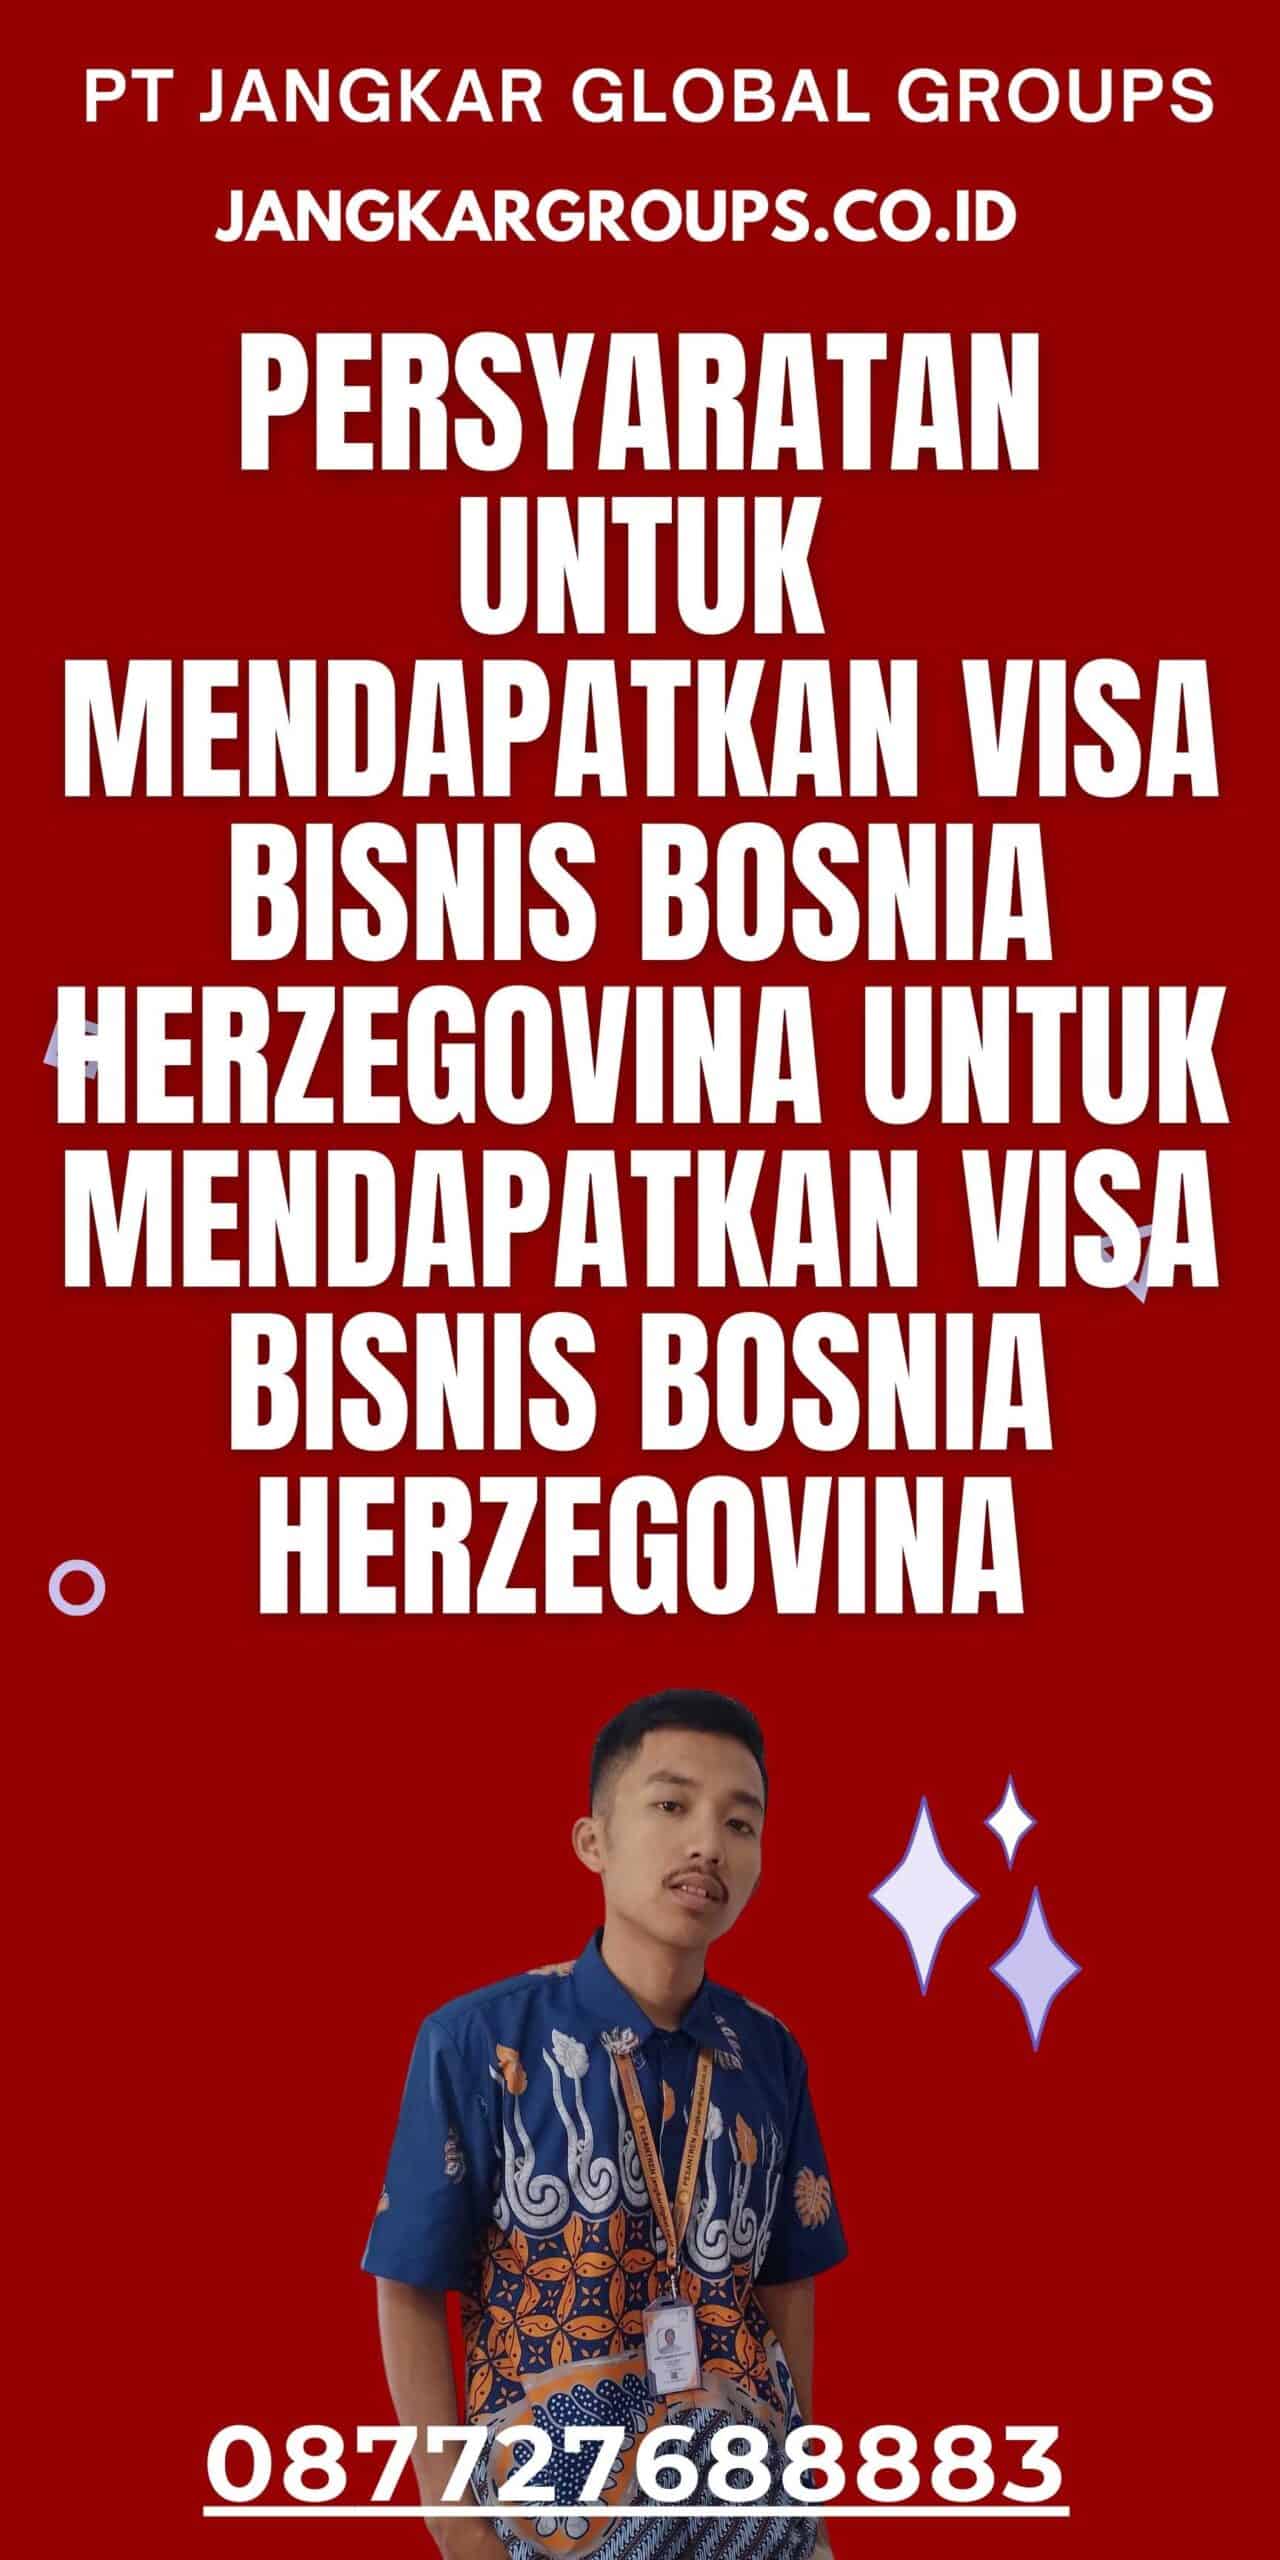 Persyaratan untuk Mendapatkan Visa Bisnis Bosnia Herzegovina untuk Mendapatkan Visa Bisnis Bosnia Herzegovina